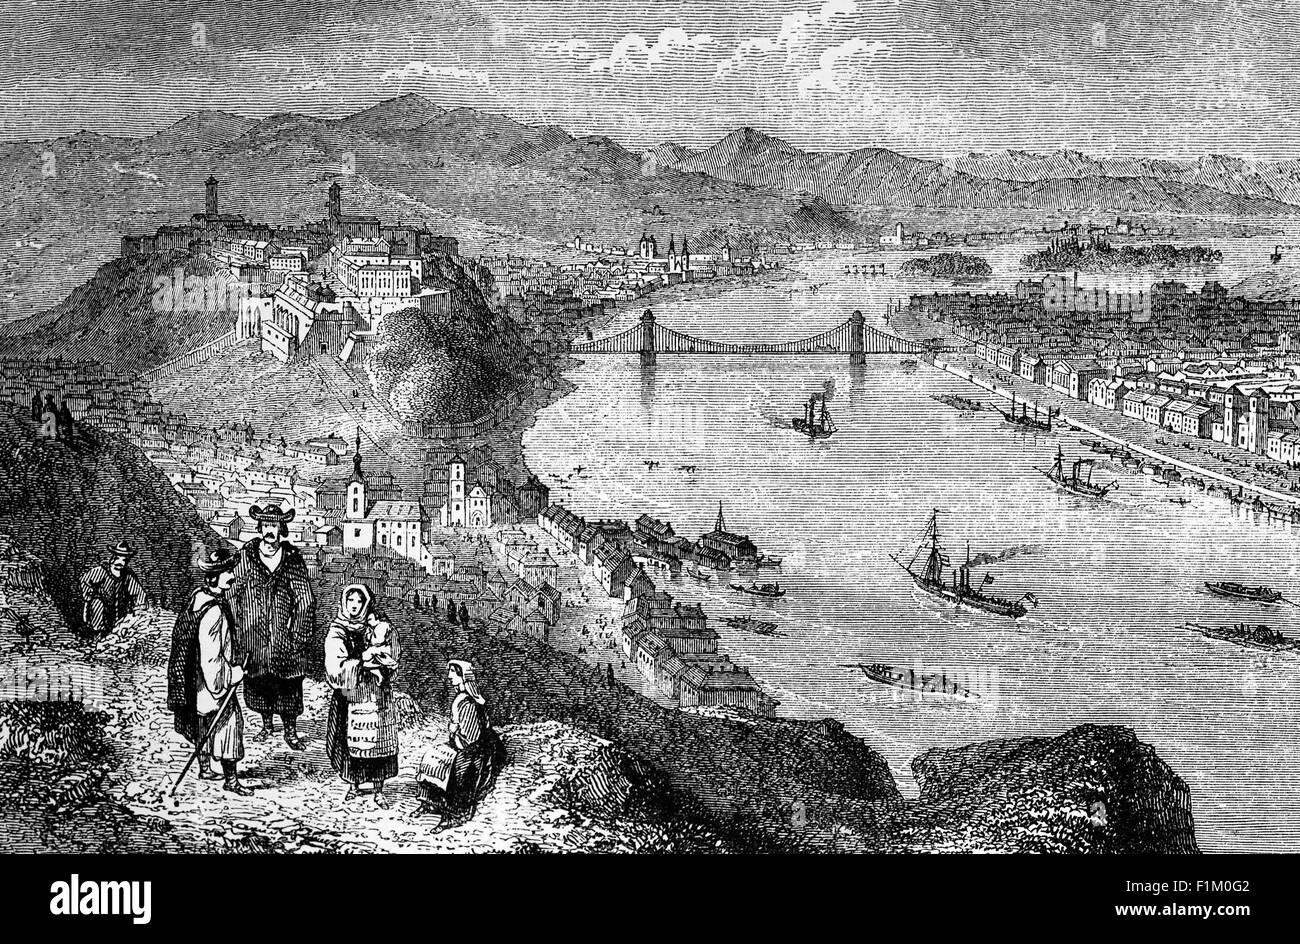 Ein Blick auf die Donau aus dem 19. Jahrhundert, während sie durch Budapest, die Hauptstadt von Ungarn fließt. 1849 wurde die Kettenbrücke zwischen Buda und Pest als erste permanente Donaubrücke eröffnet[67] und 1873 wurden Buda und Pest offiziell mit dem dritten Teil, Óbuda (Alt-Buda), verschmolzen und so die neue Metropole Budapest geschaffen. Stockfoto